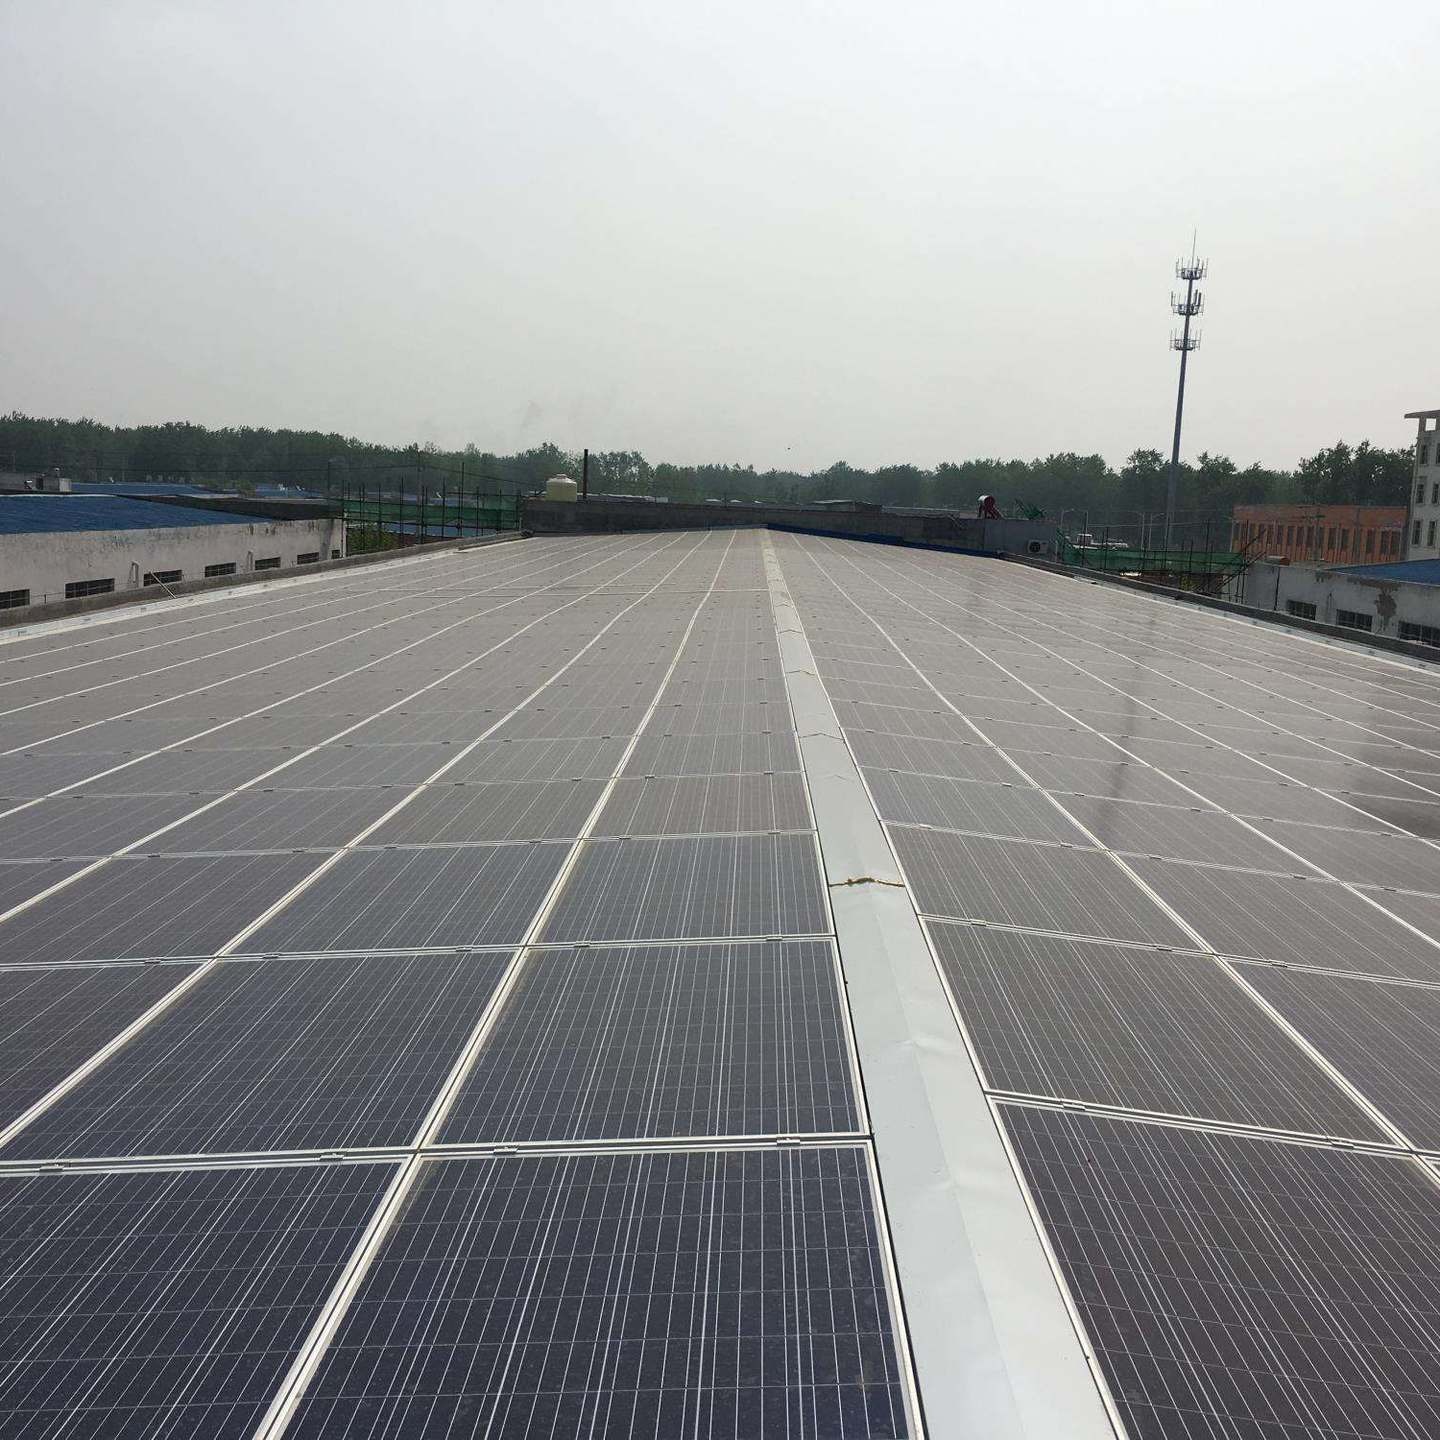 太阳能发电系统 工商业屋顶 光伏发电 多种应用形式 节省企业用电成本